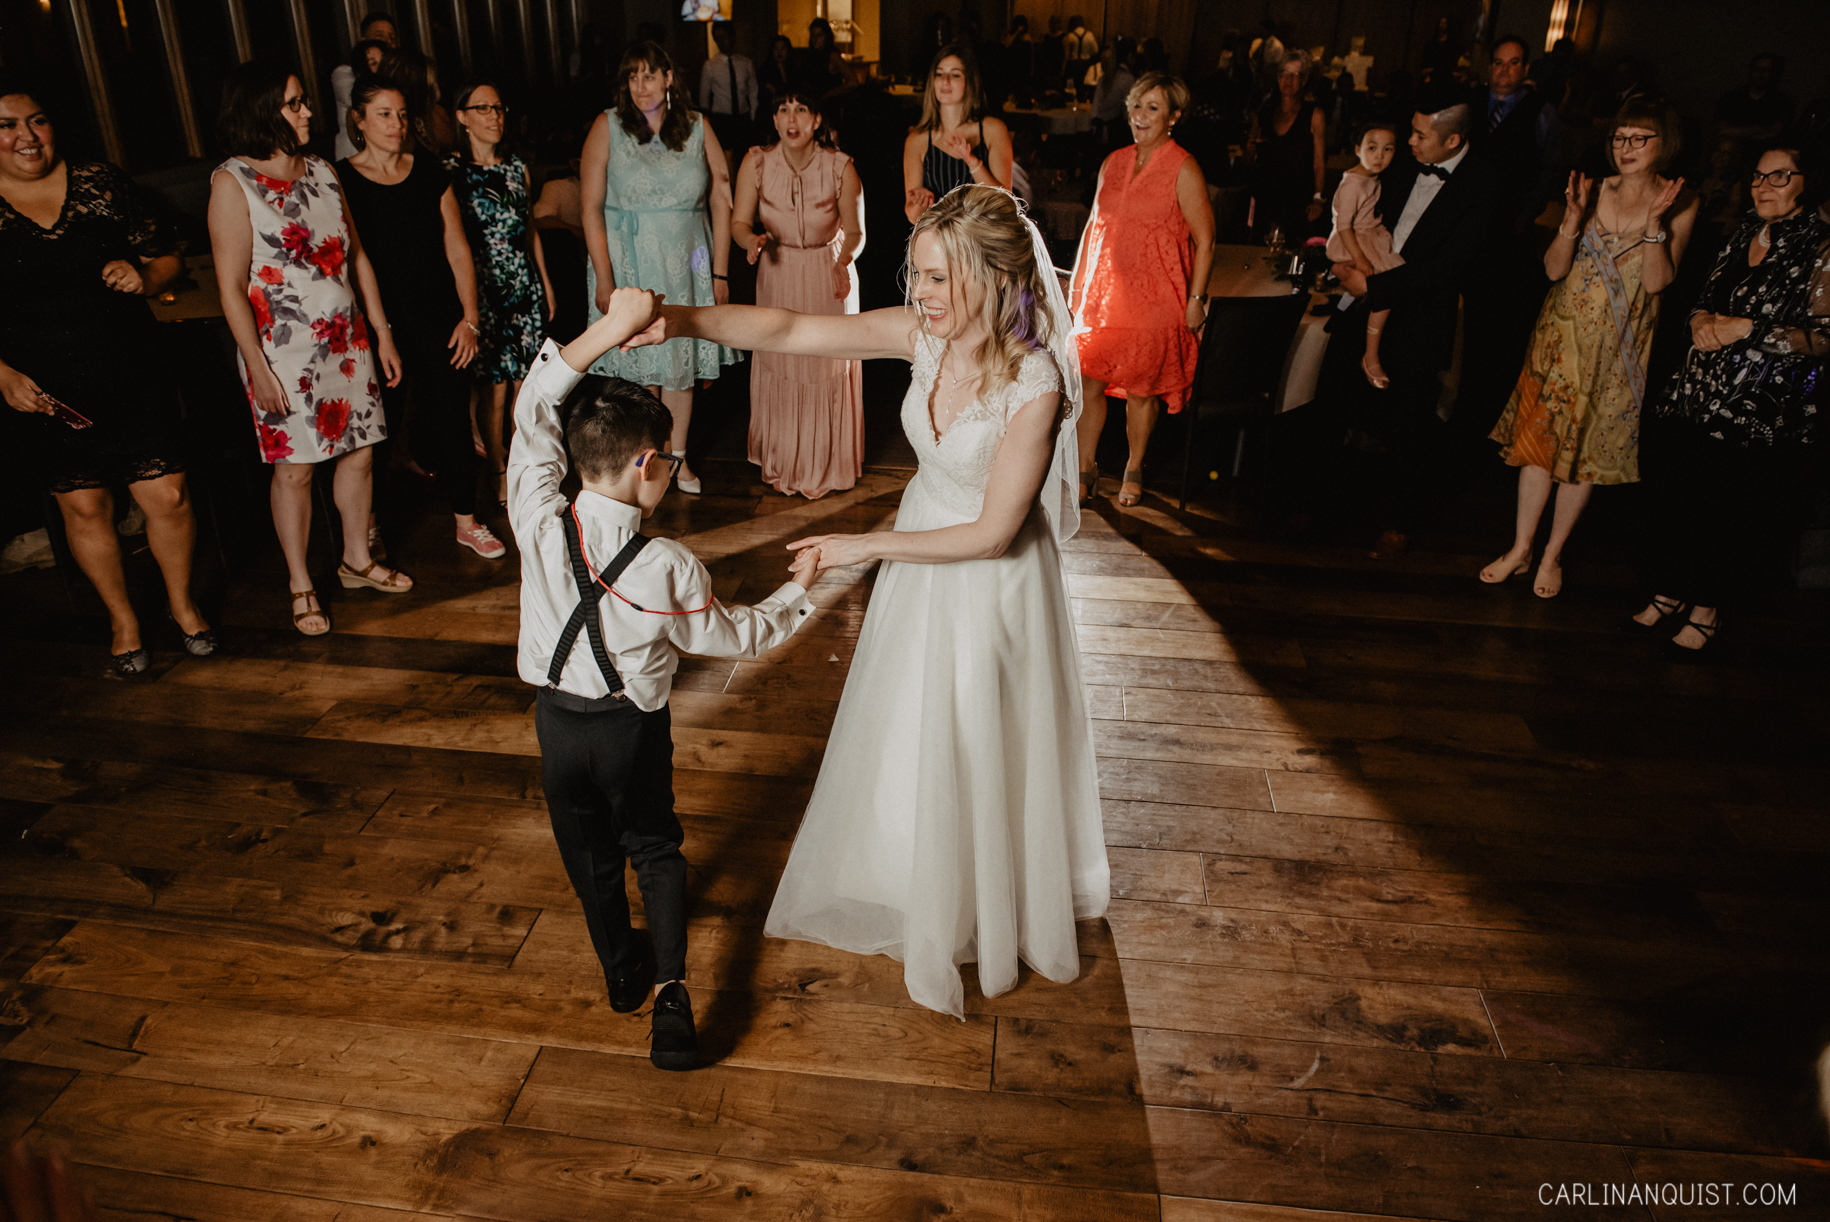 Wedding Dance | Calgary Wedding Photographer